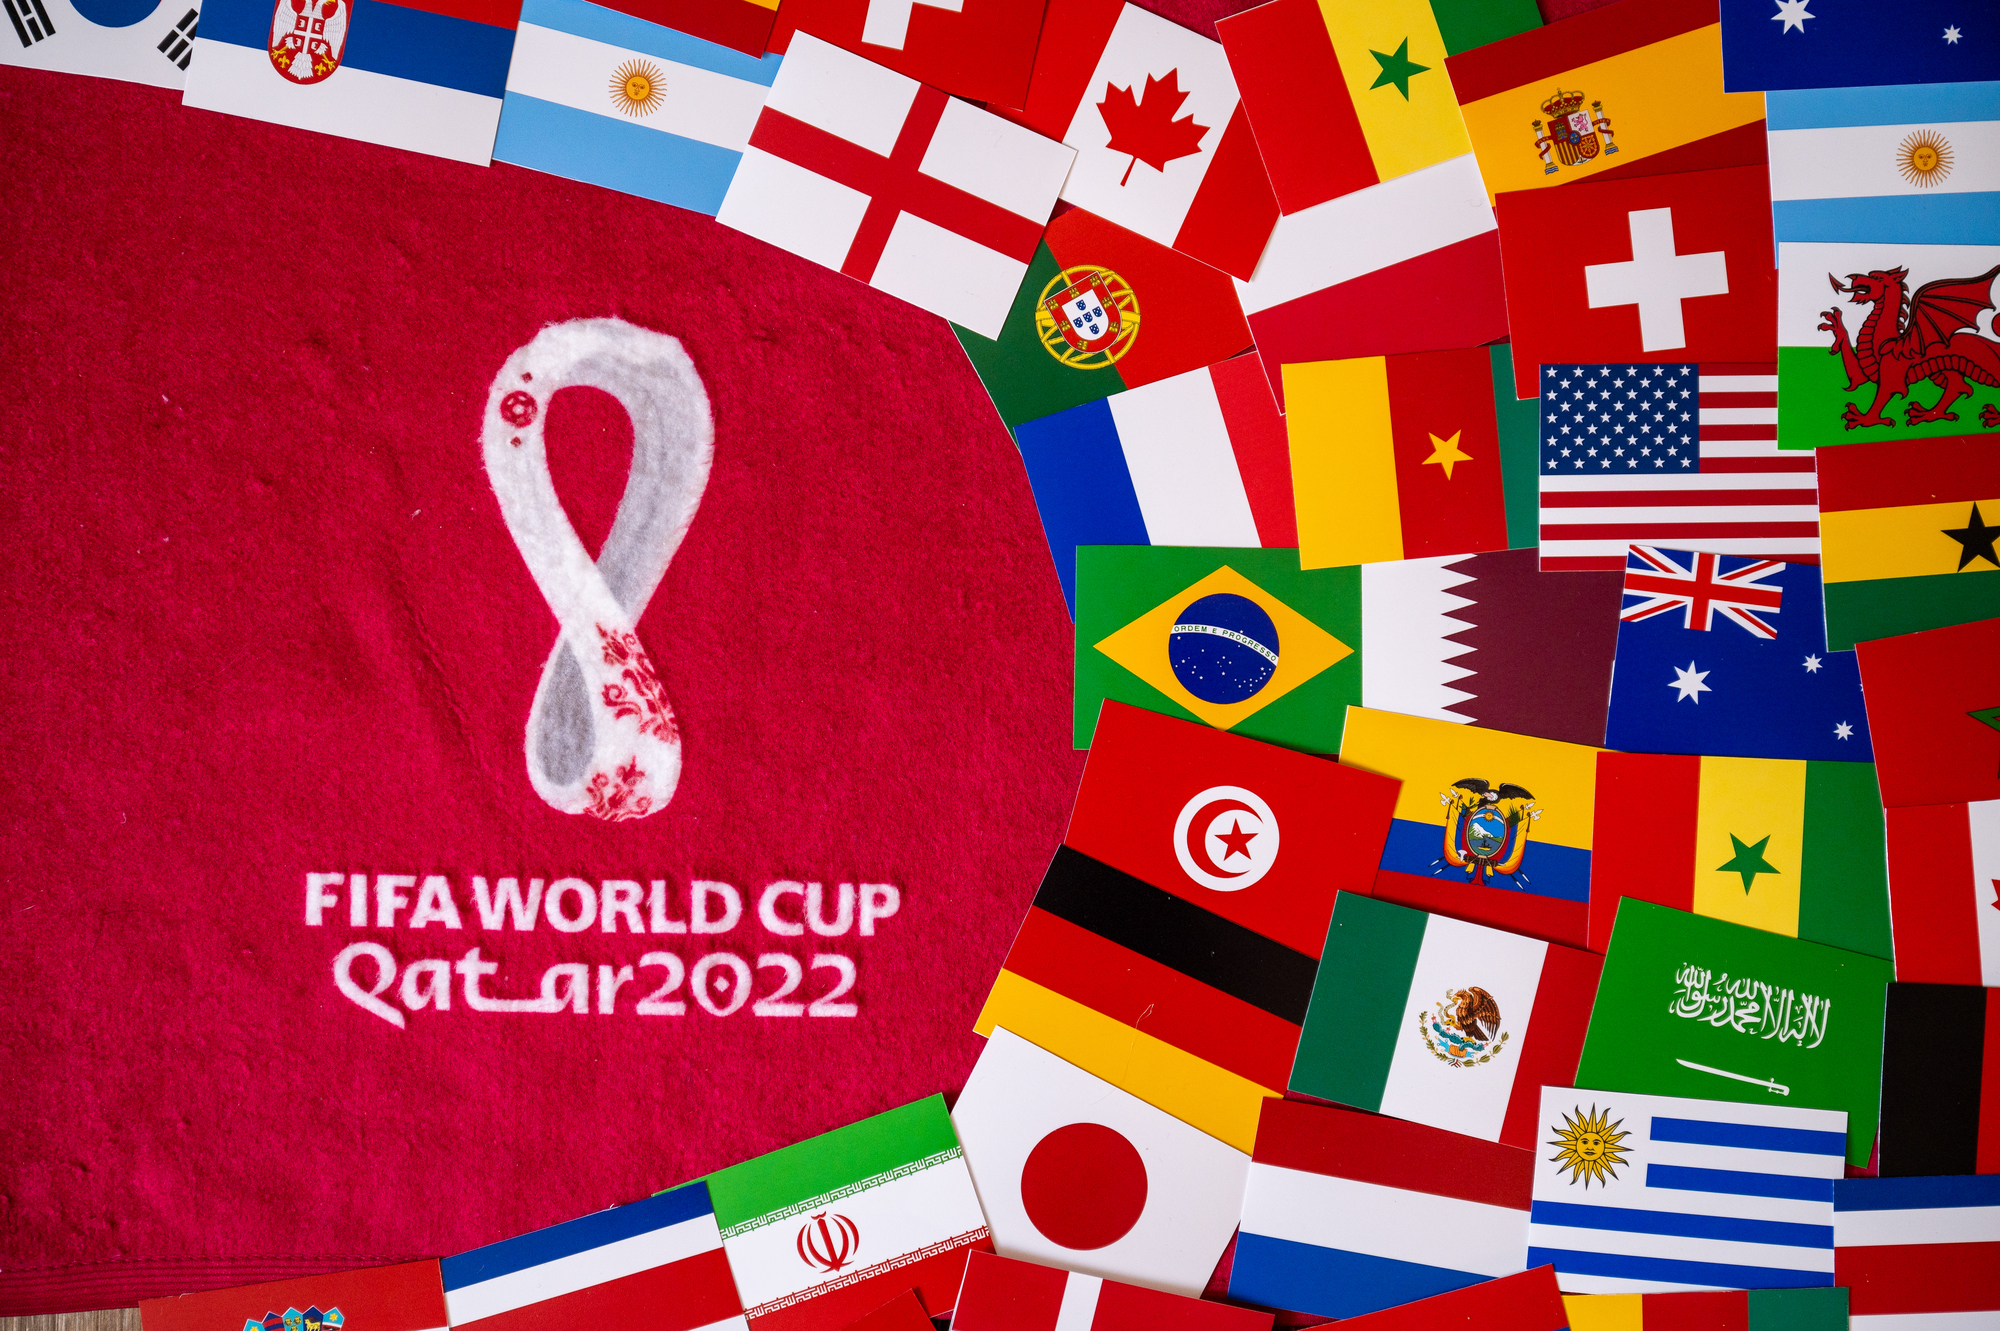 Mistrovství světa ve fotbale 2022 – praktické informace o letošním mundialu